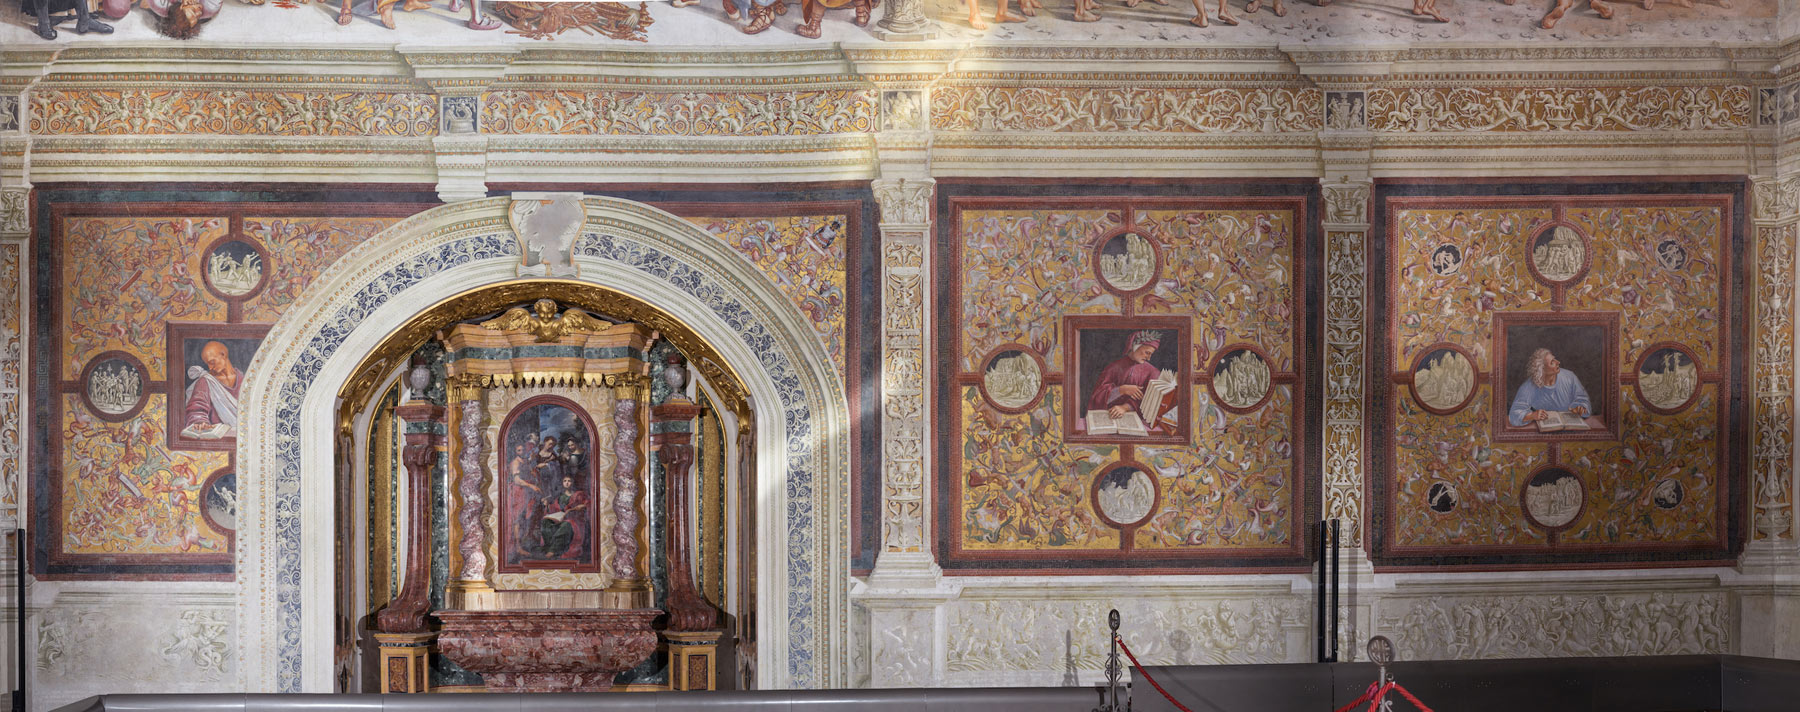 La parete di sinistra della Cappella di San Brizio
